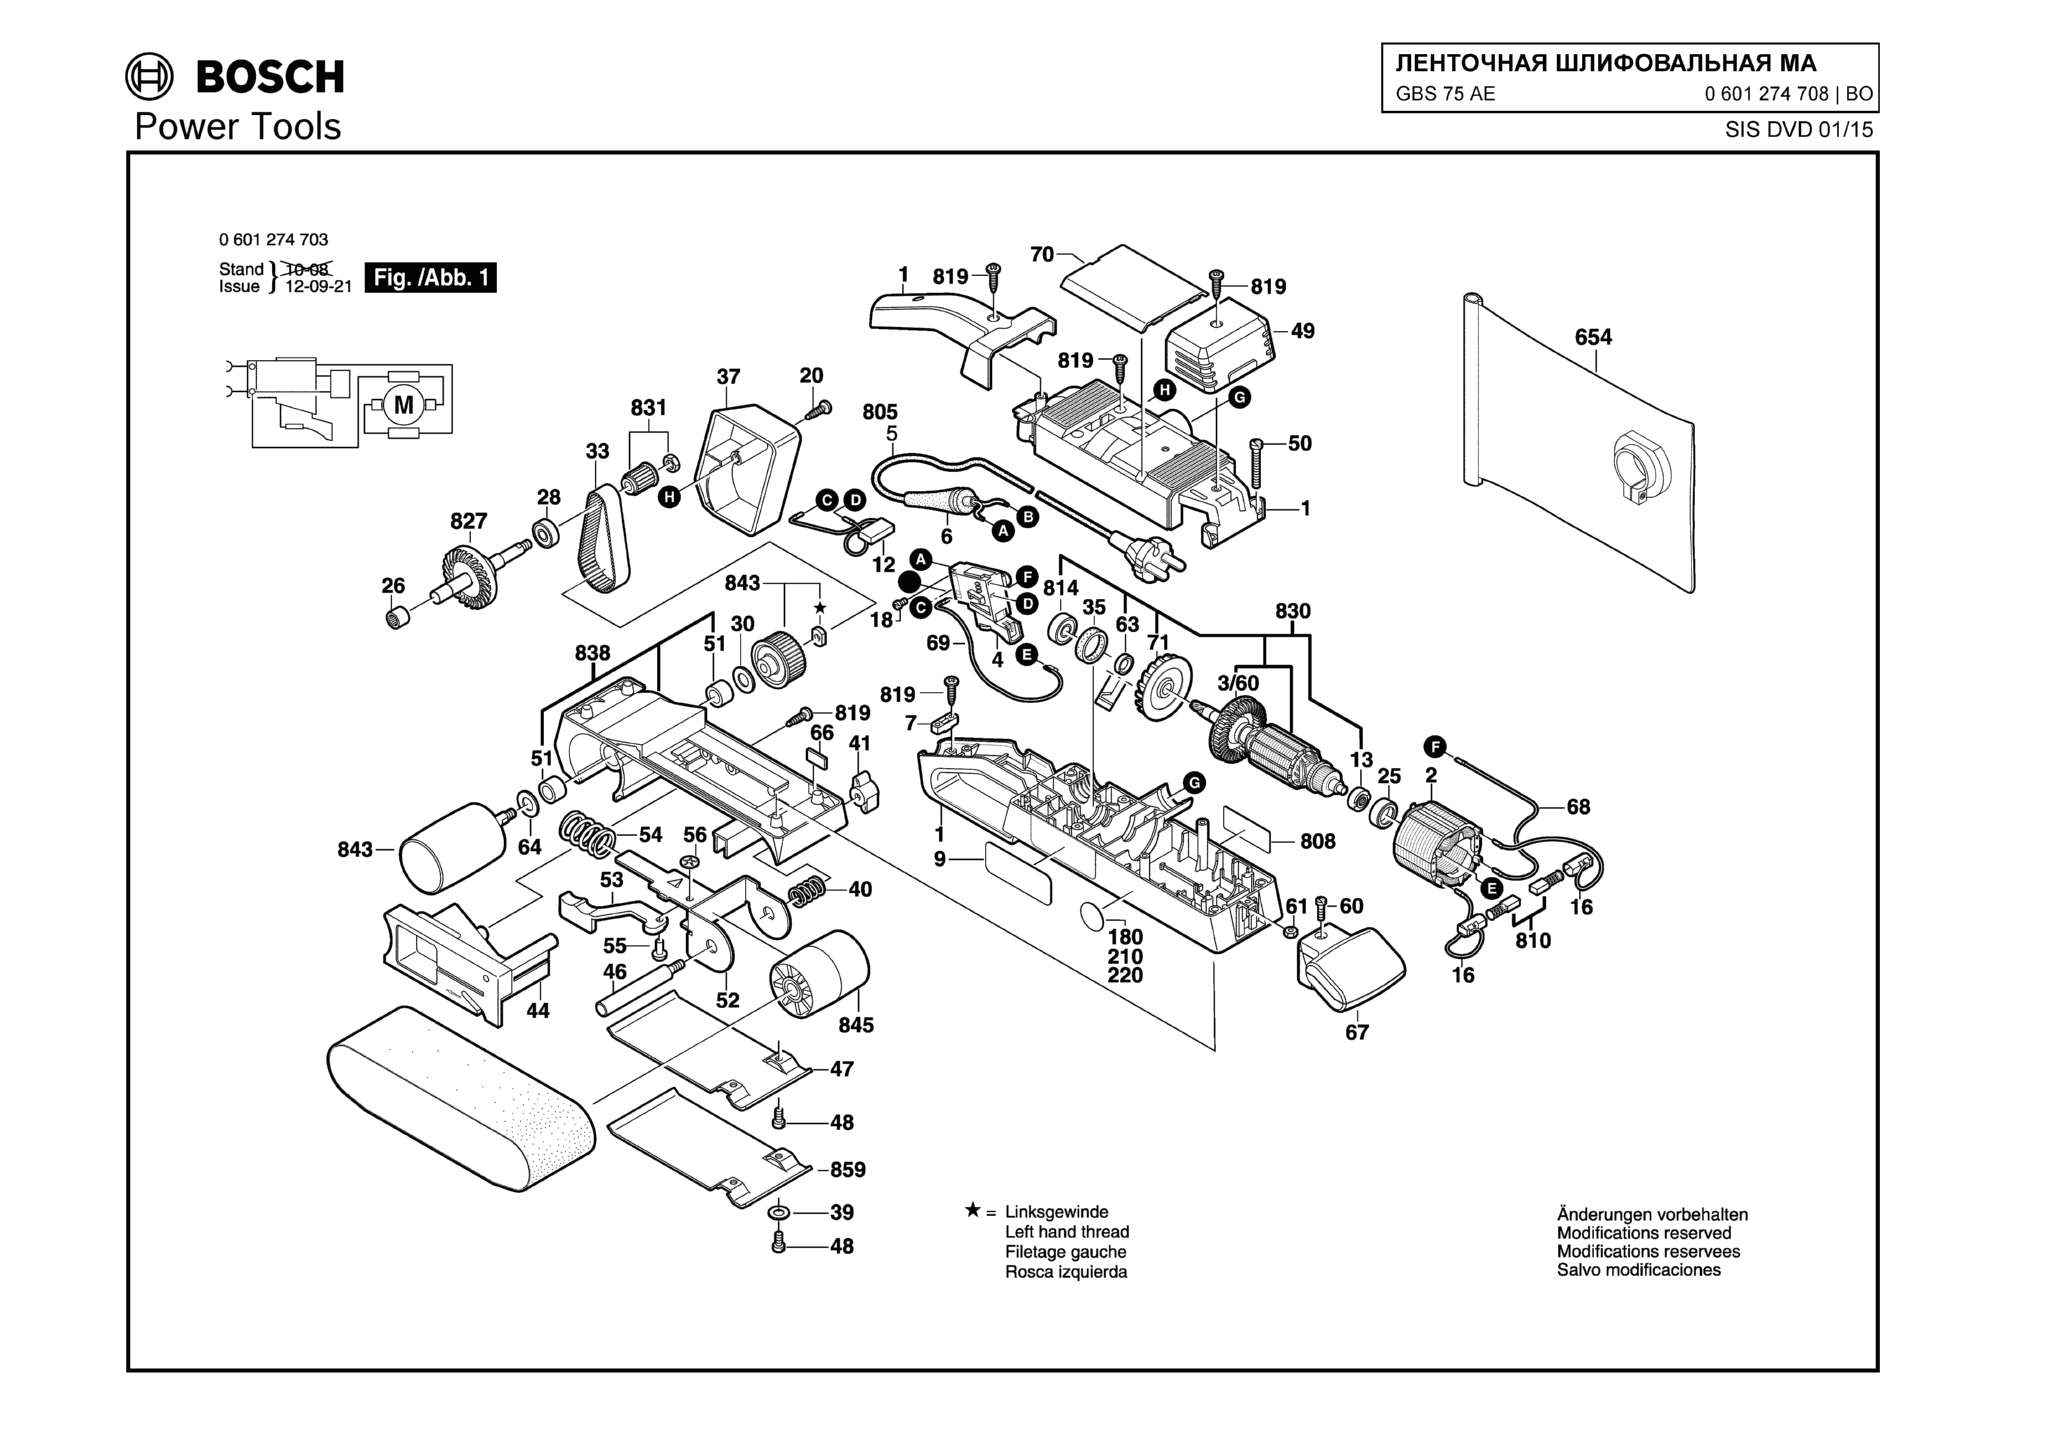 Запчасти, схема и деталировка Bosch GBS 75 AE (ТИП 0601274708)